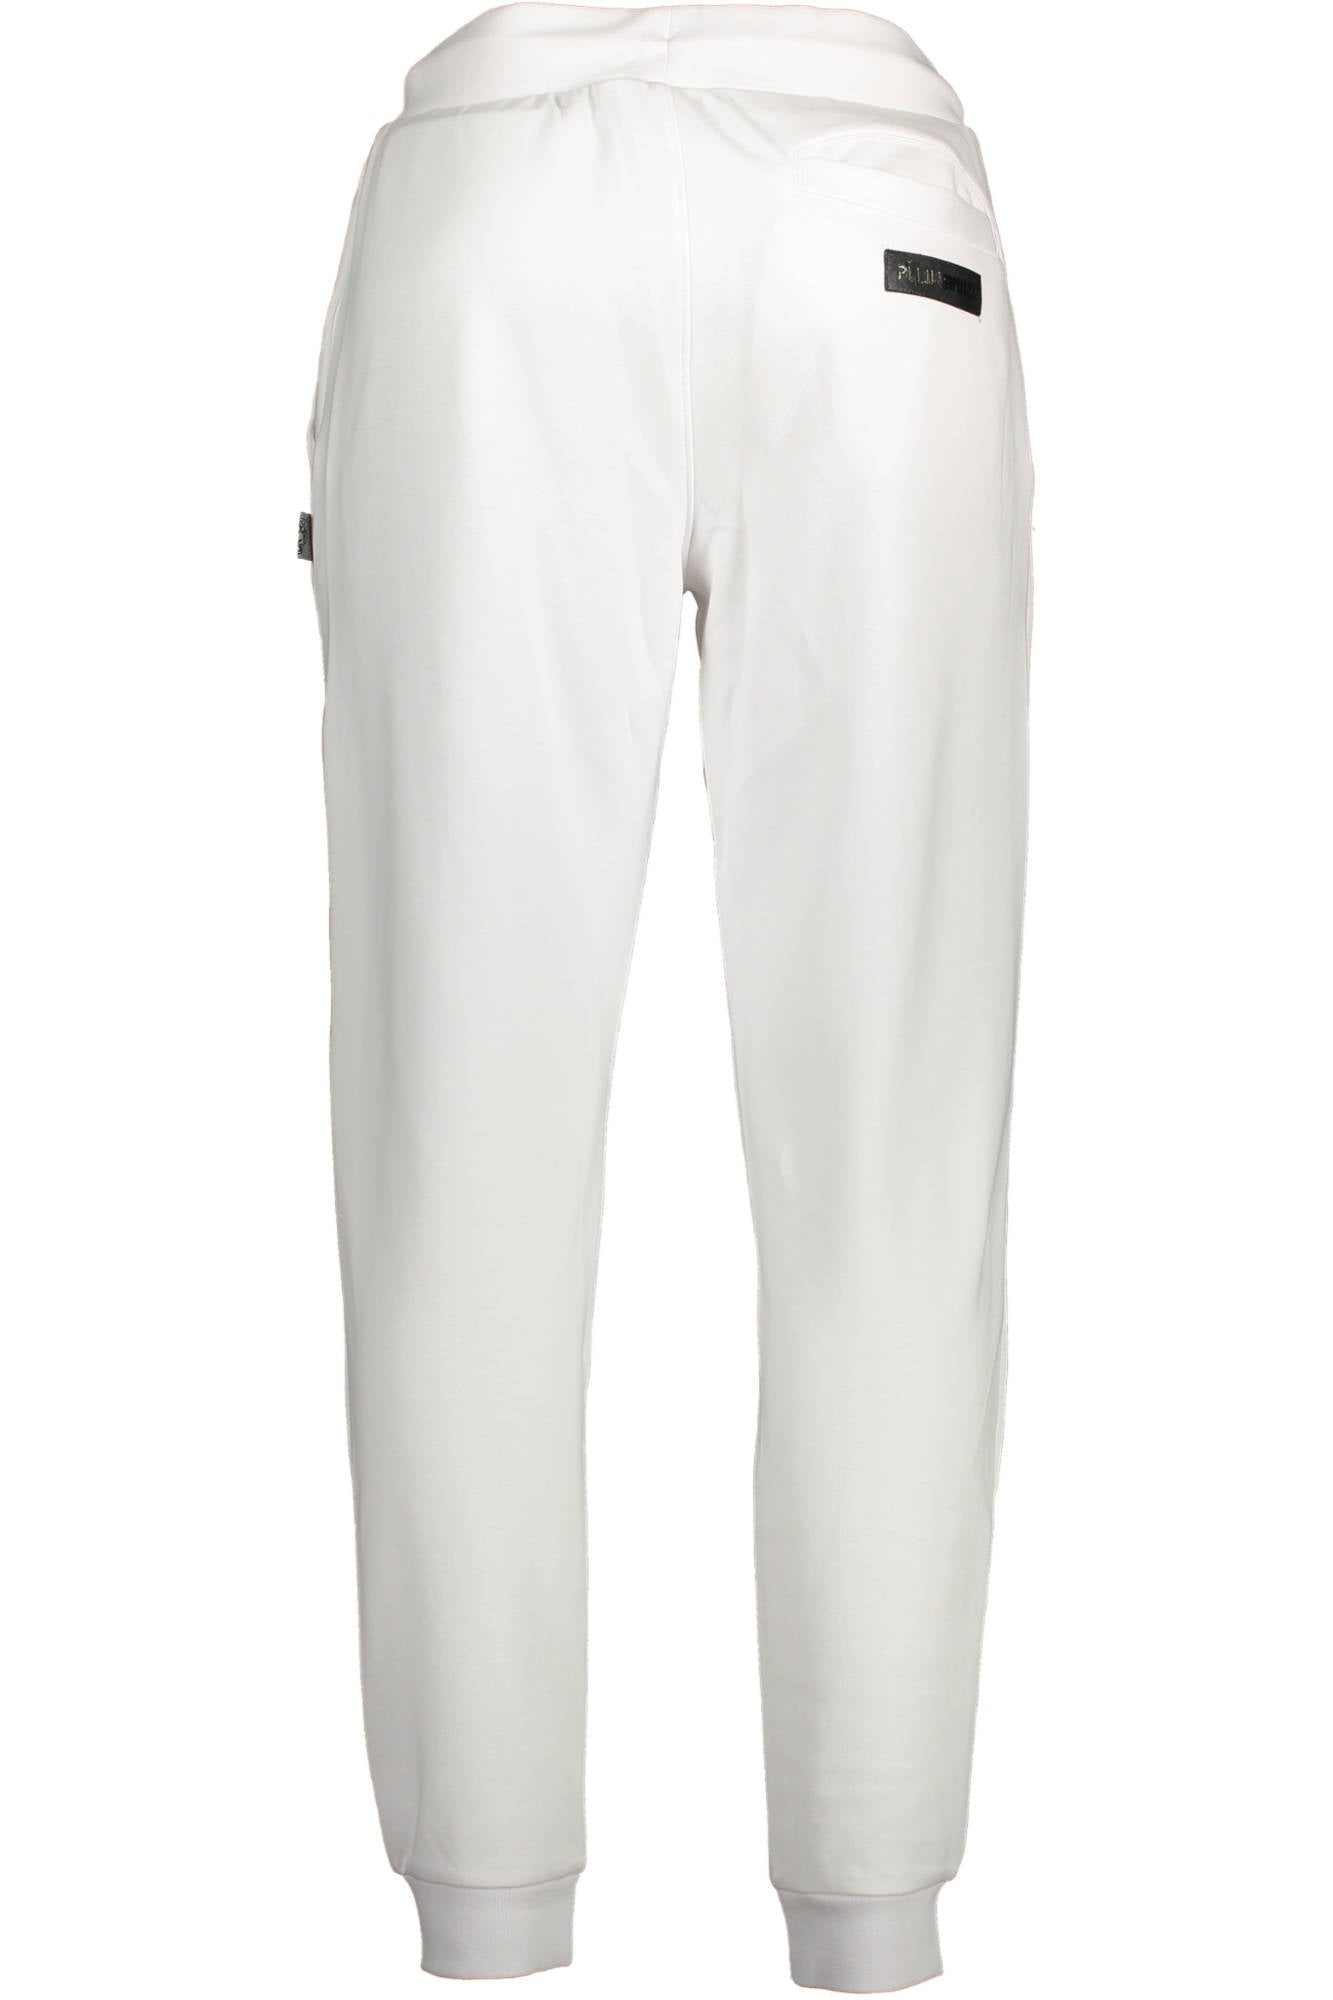 Plein Sport White Jeans & Pant - Fizigo